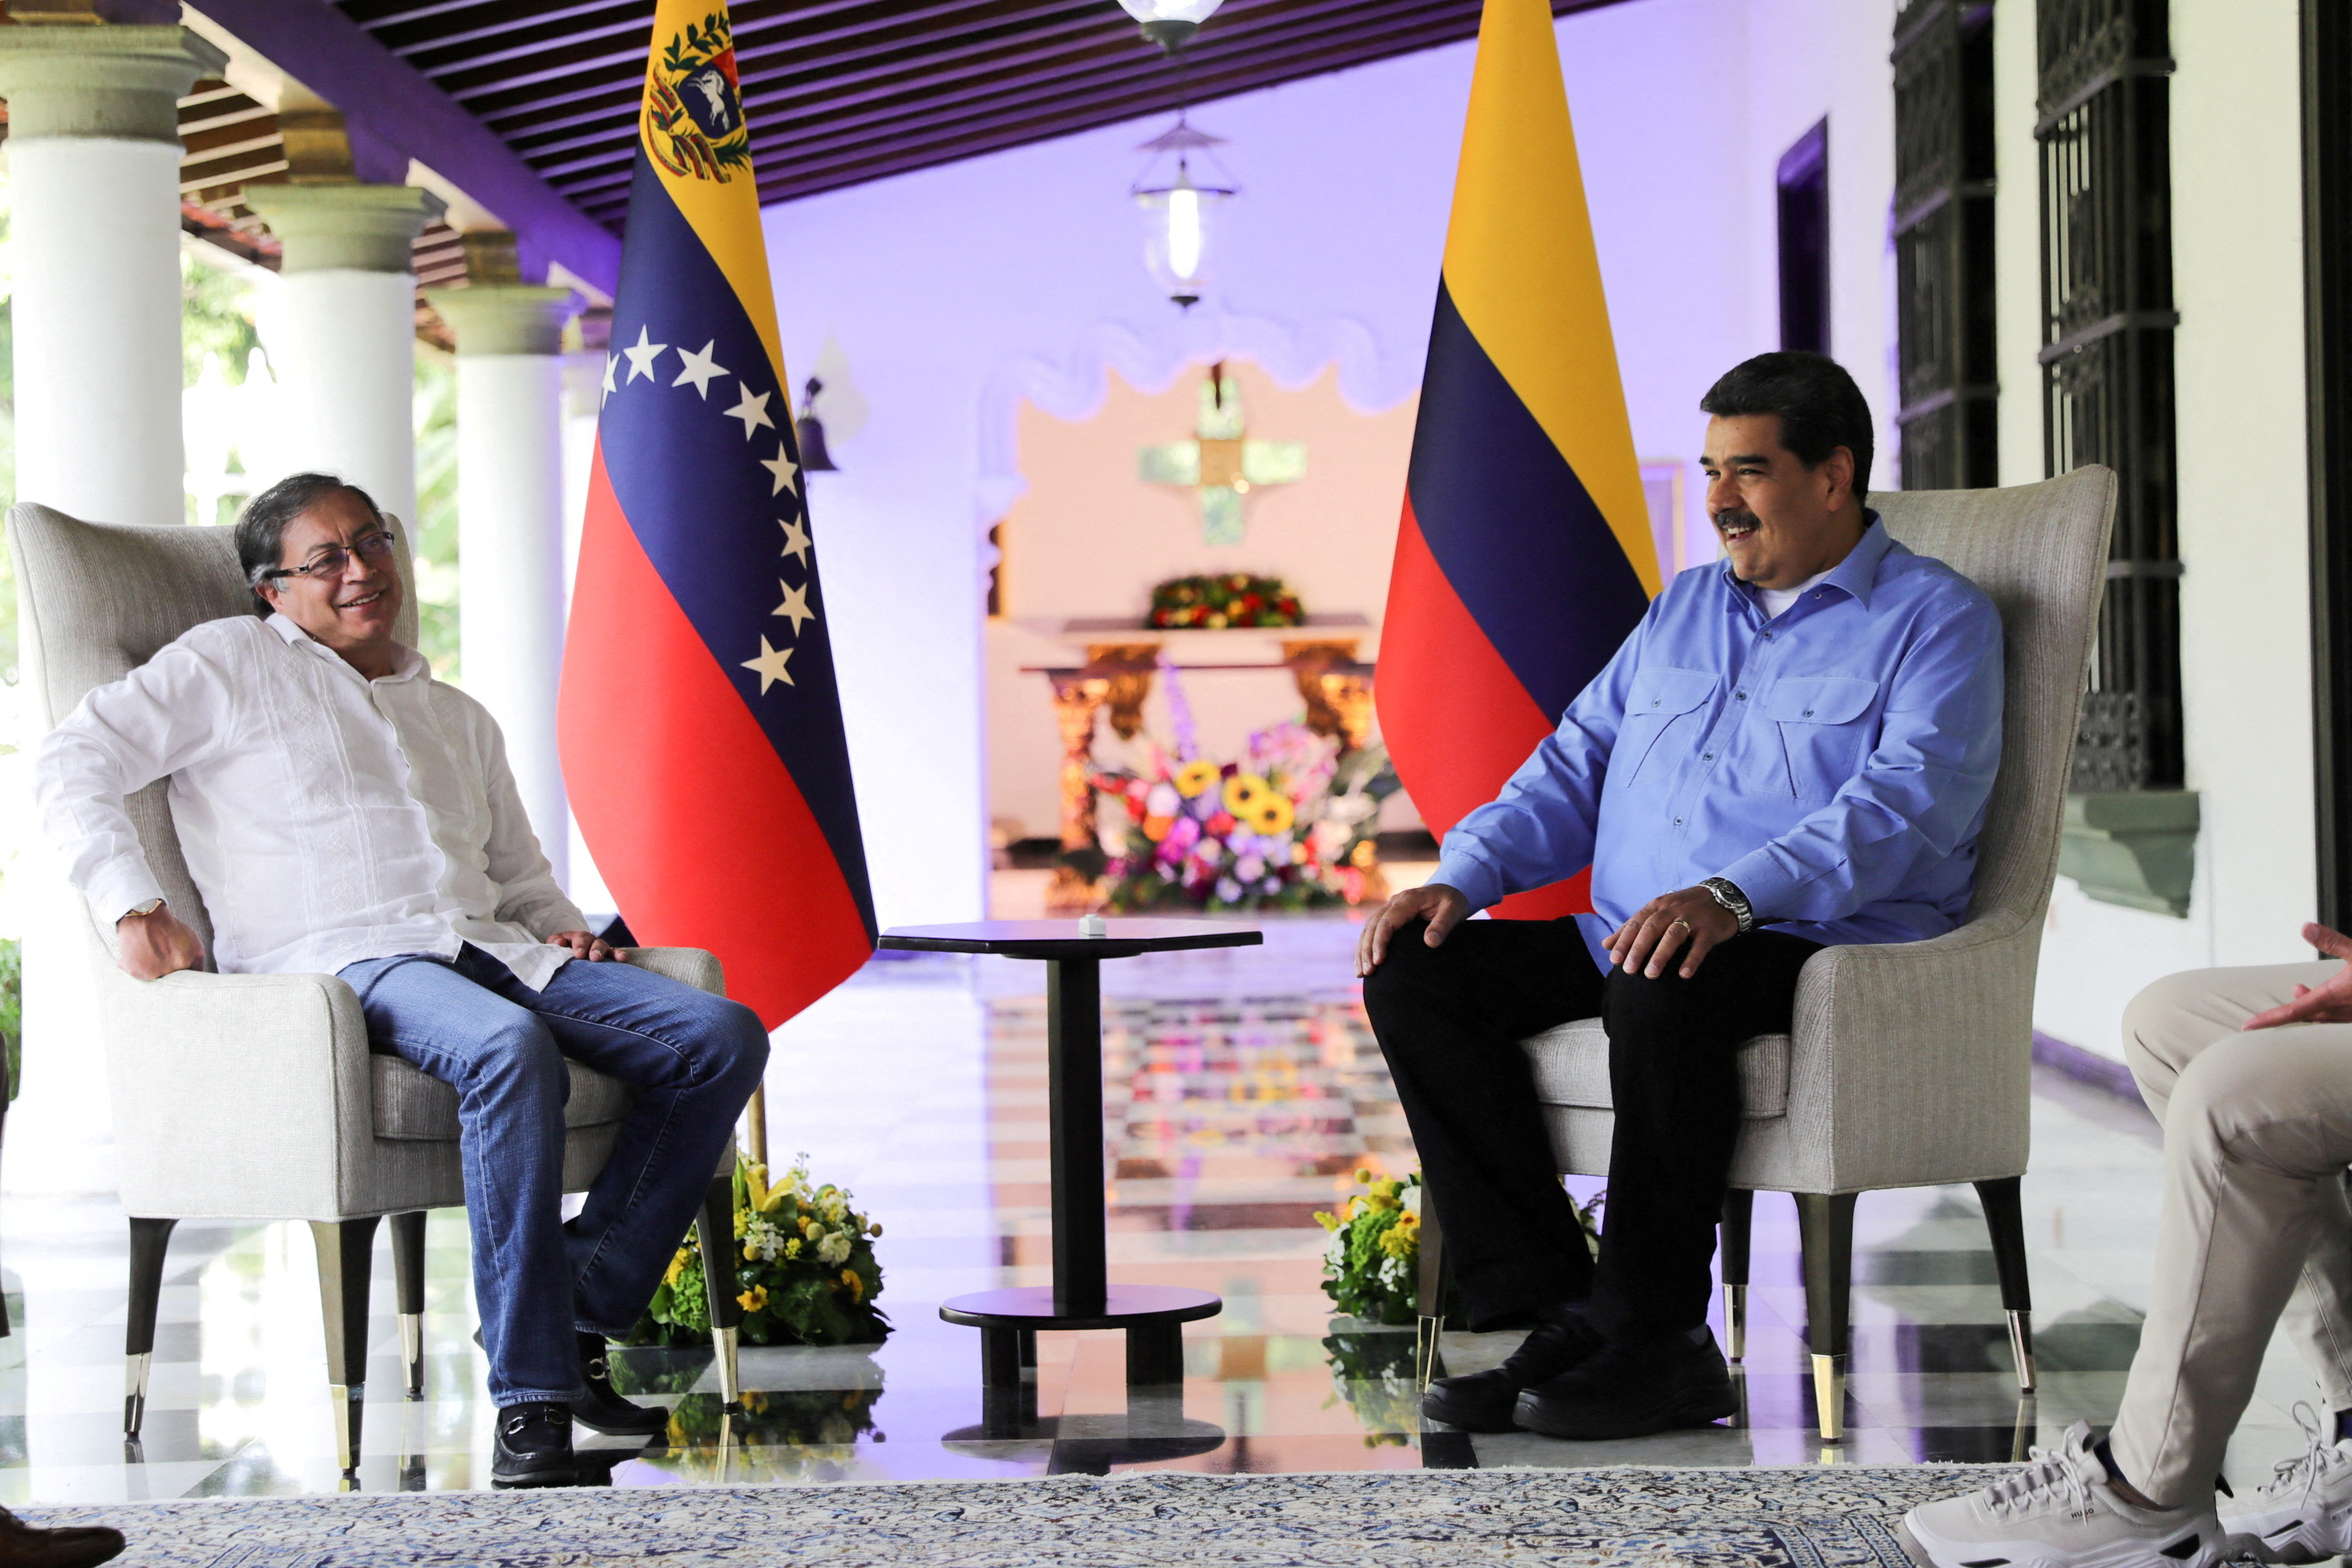 Gustavo Petro propone una conferencia internacional para resolver la crisis política en Venezuela (Marcelo Garcia/Miraflores Palace/Handout via REUTERS)